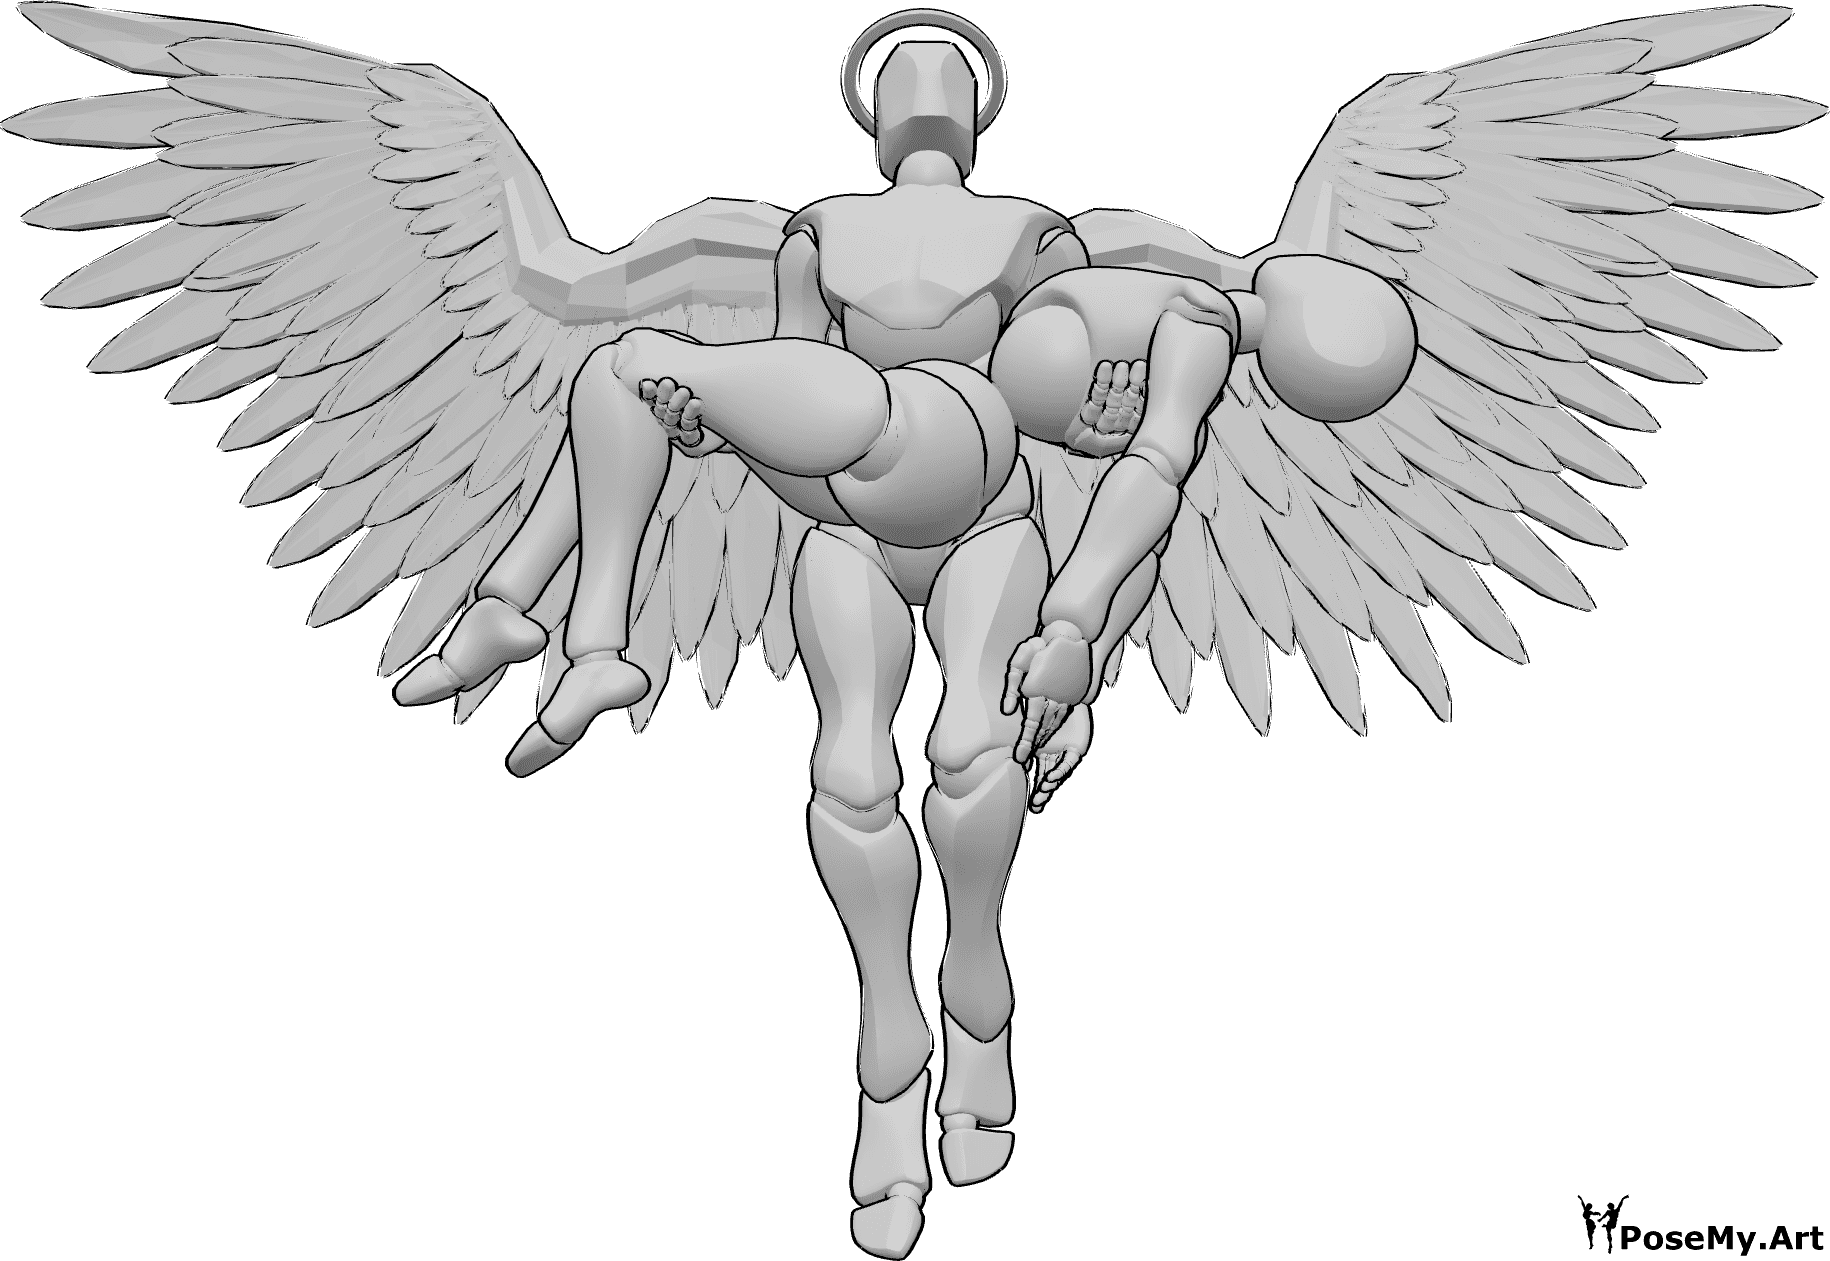 Referencia de poses- Ángel en pose femenina - Un ángel macho sujeta a una hembra con las dos manos y vuela hacia arriba